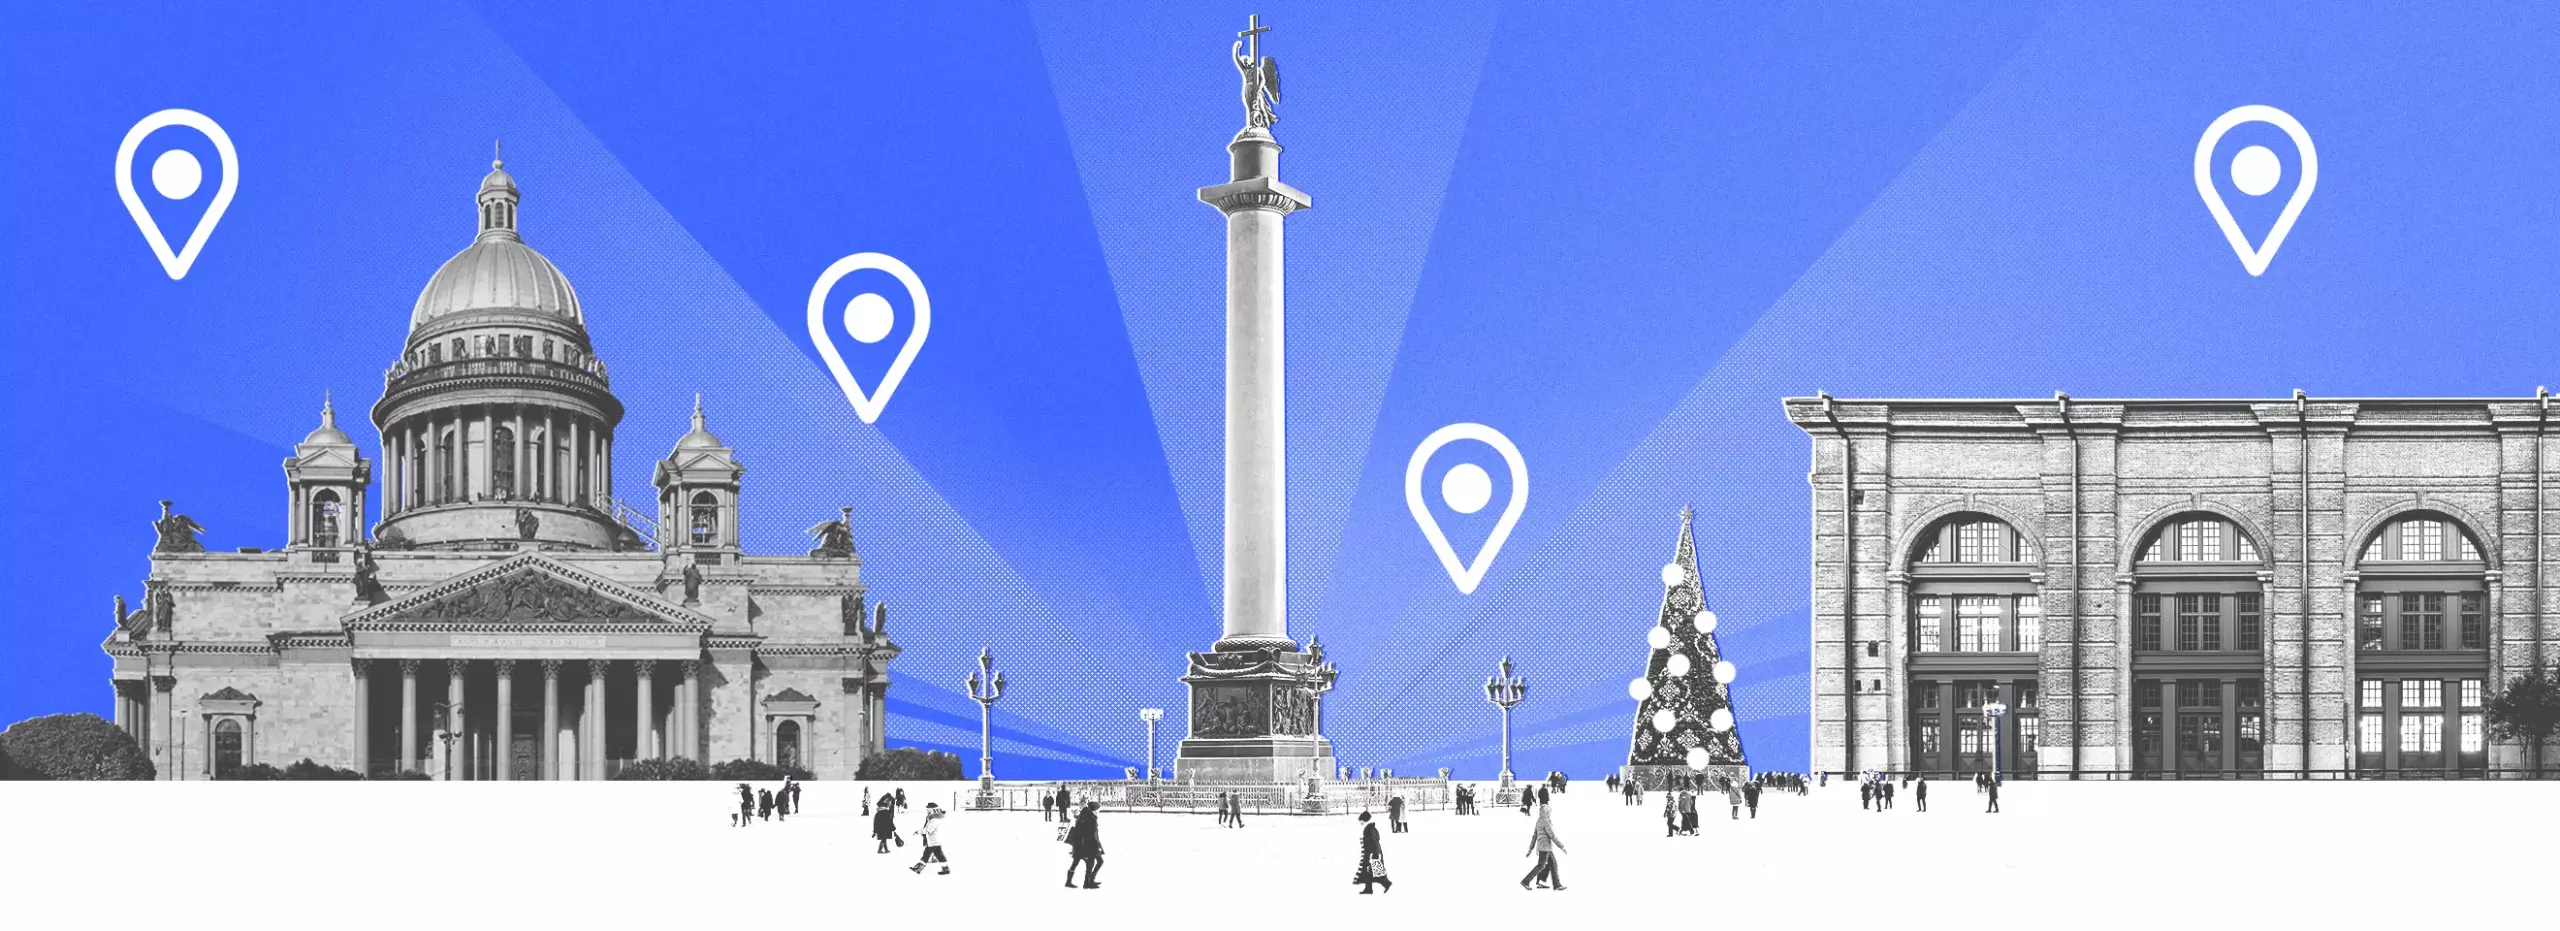 Полноразмерная обложка поста на тему: Новый год в Санкт-Петербурге: чем заняться и куда пойти на праздники